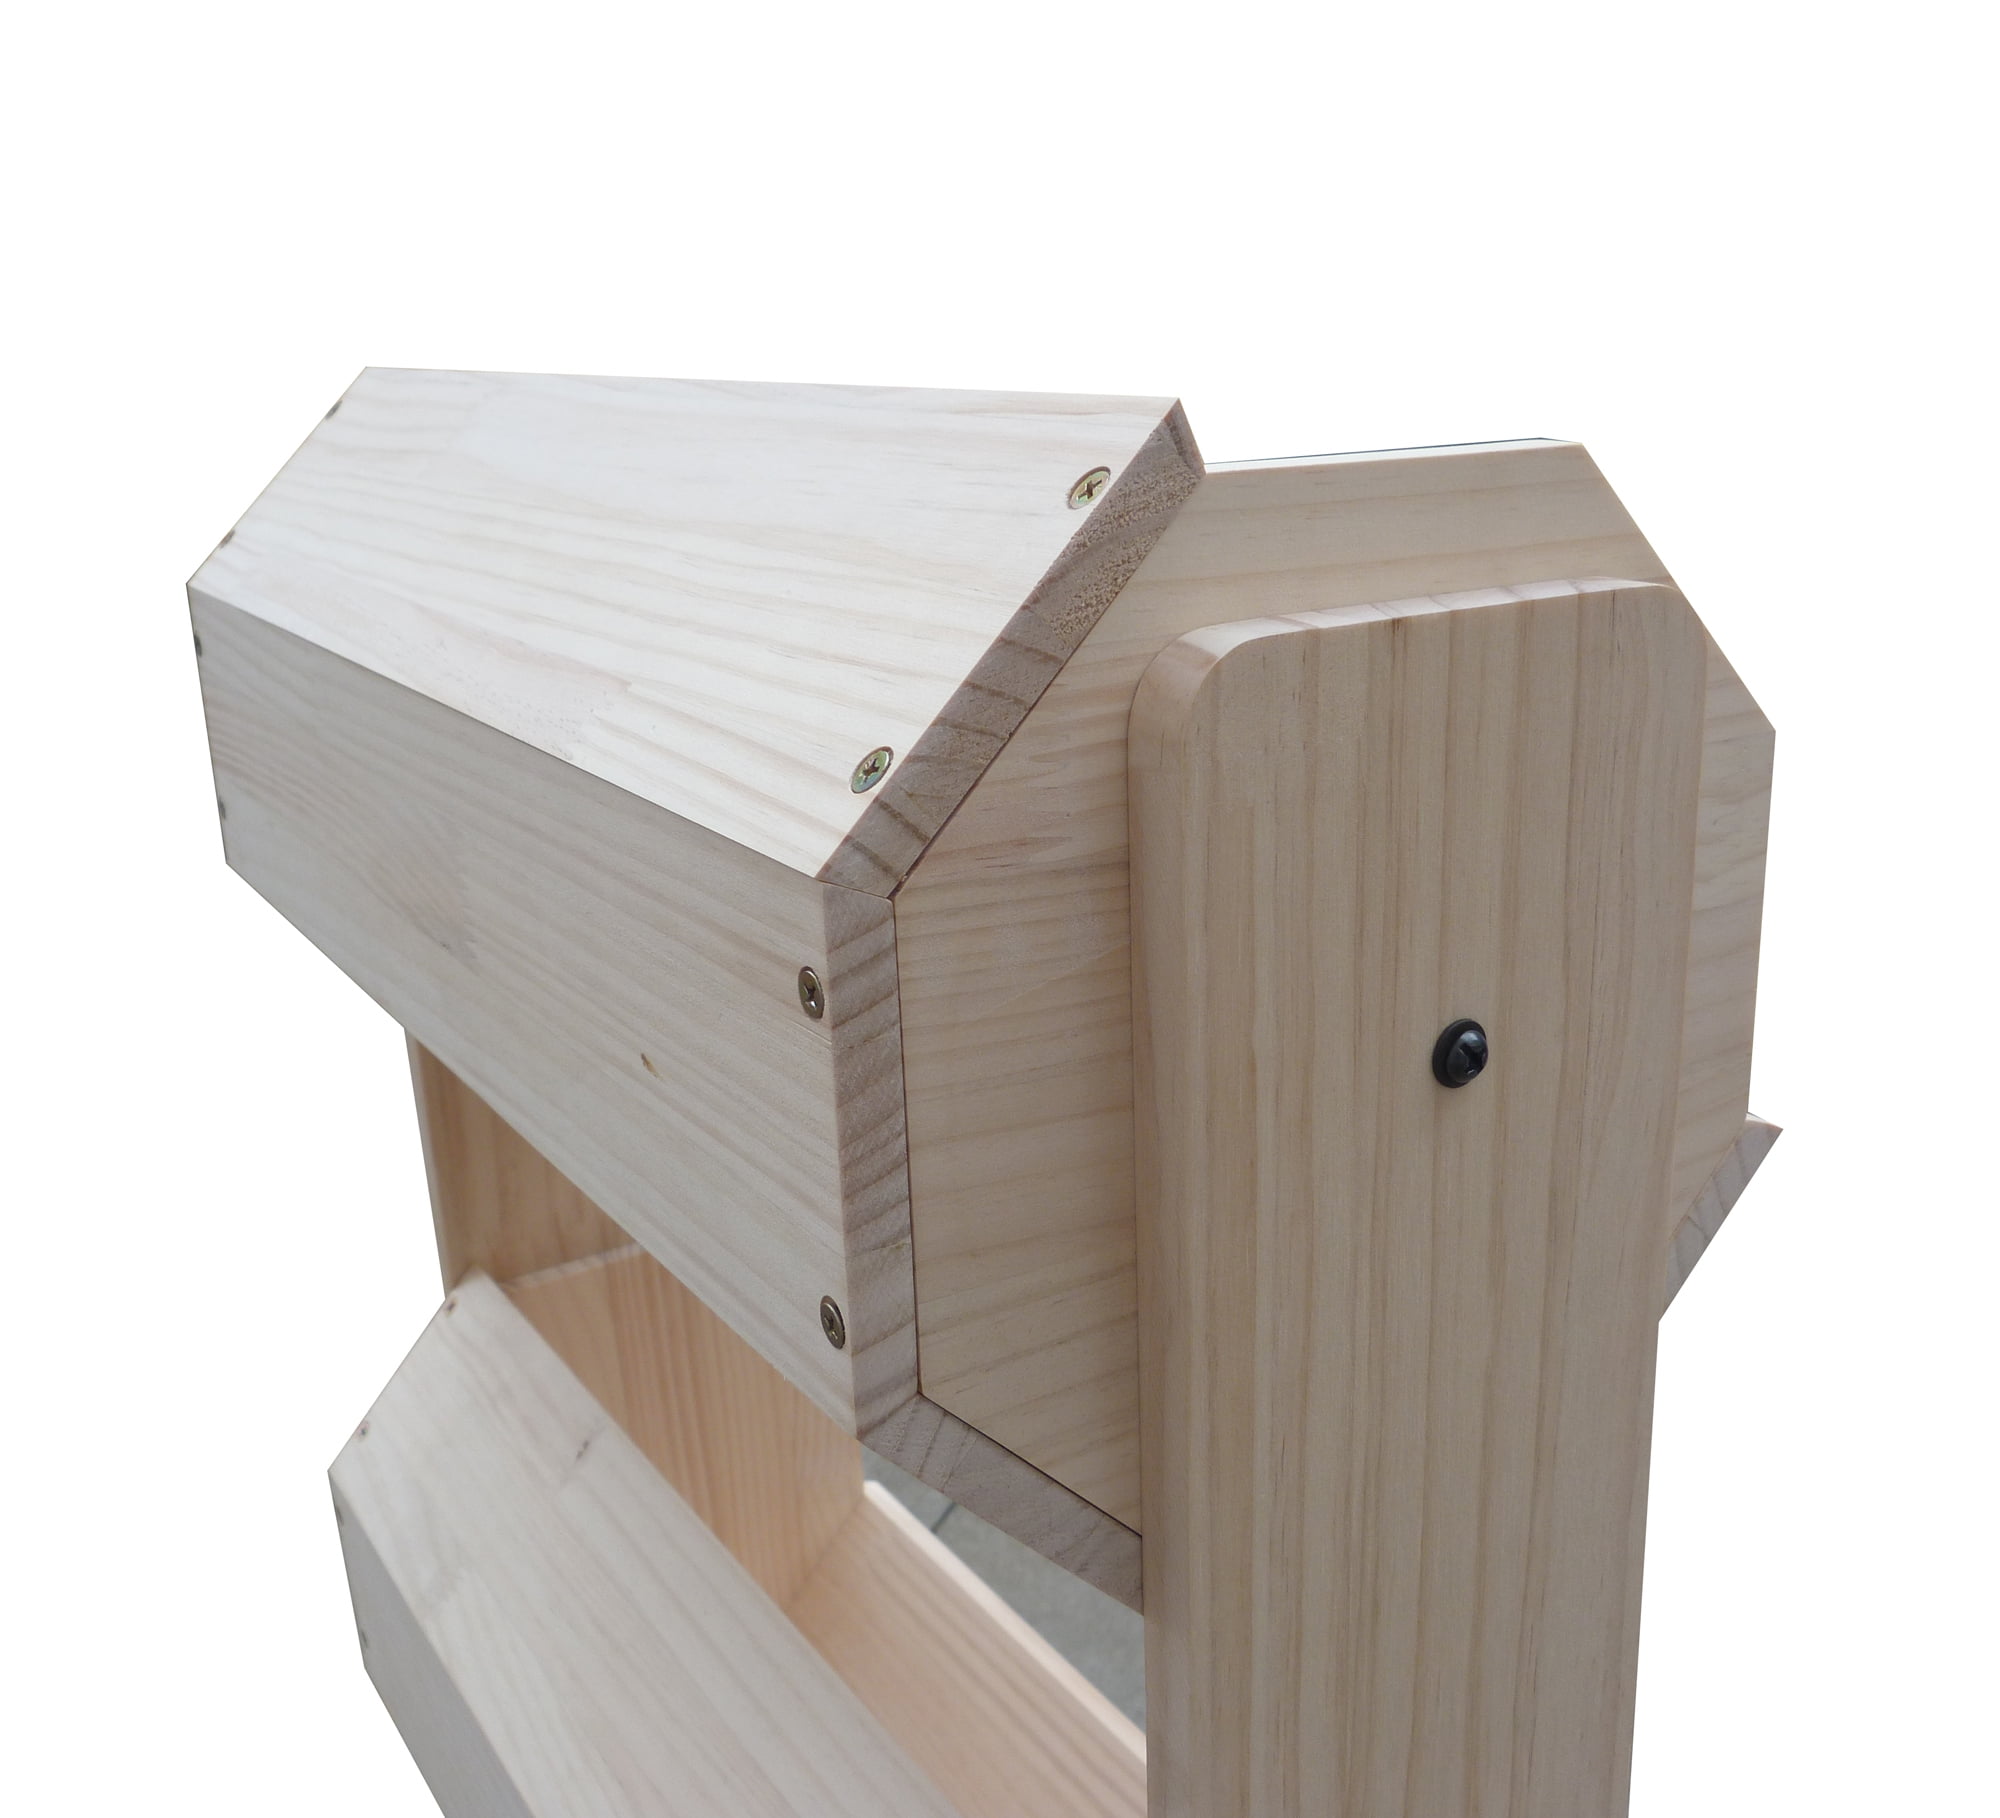 Floorstanding FixtureDisplays 21.0 x 53.0 x 17.0 Tiered Wooden Display Natural Pine 19407 4 Bins 